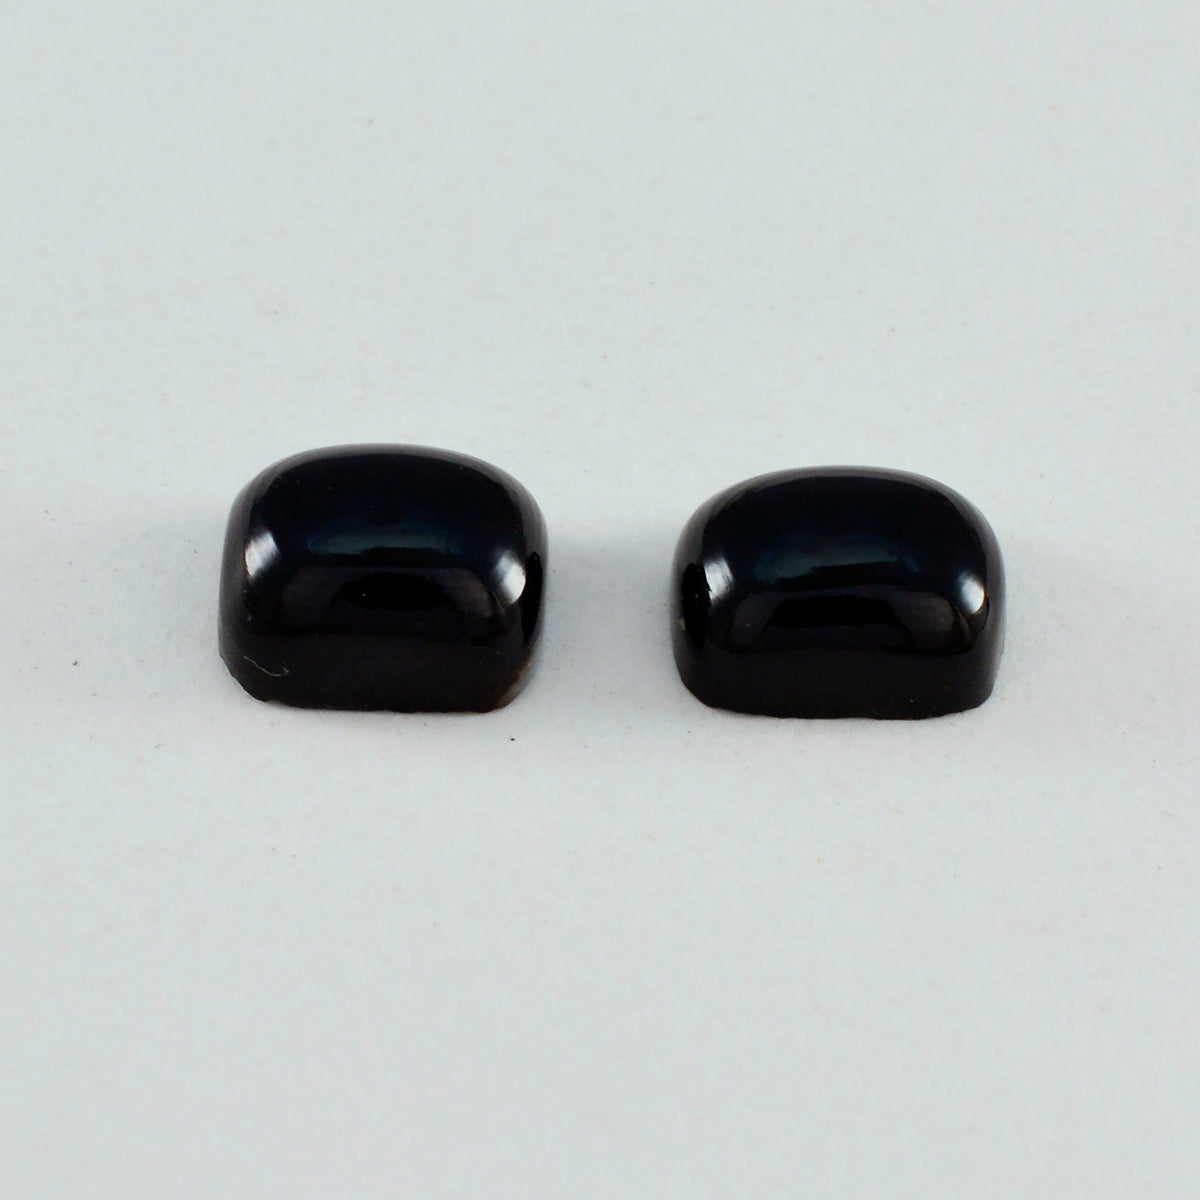 riyogems 1pc cabochon onyx noir 8x10 mm forme octogonale jolie pierre précieuse en vrac de qualité